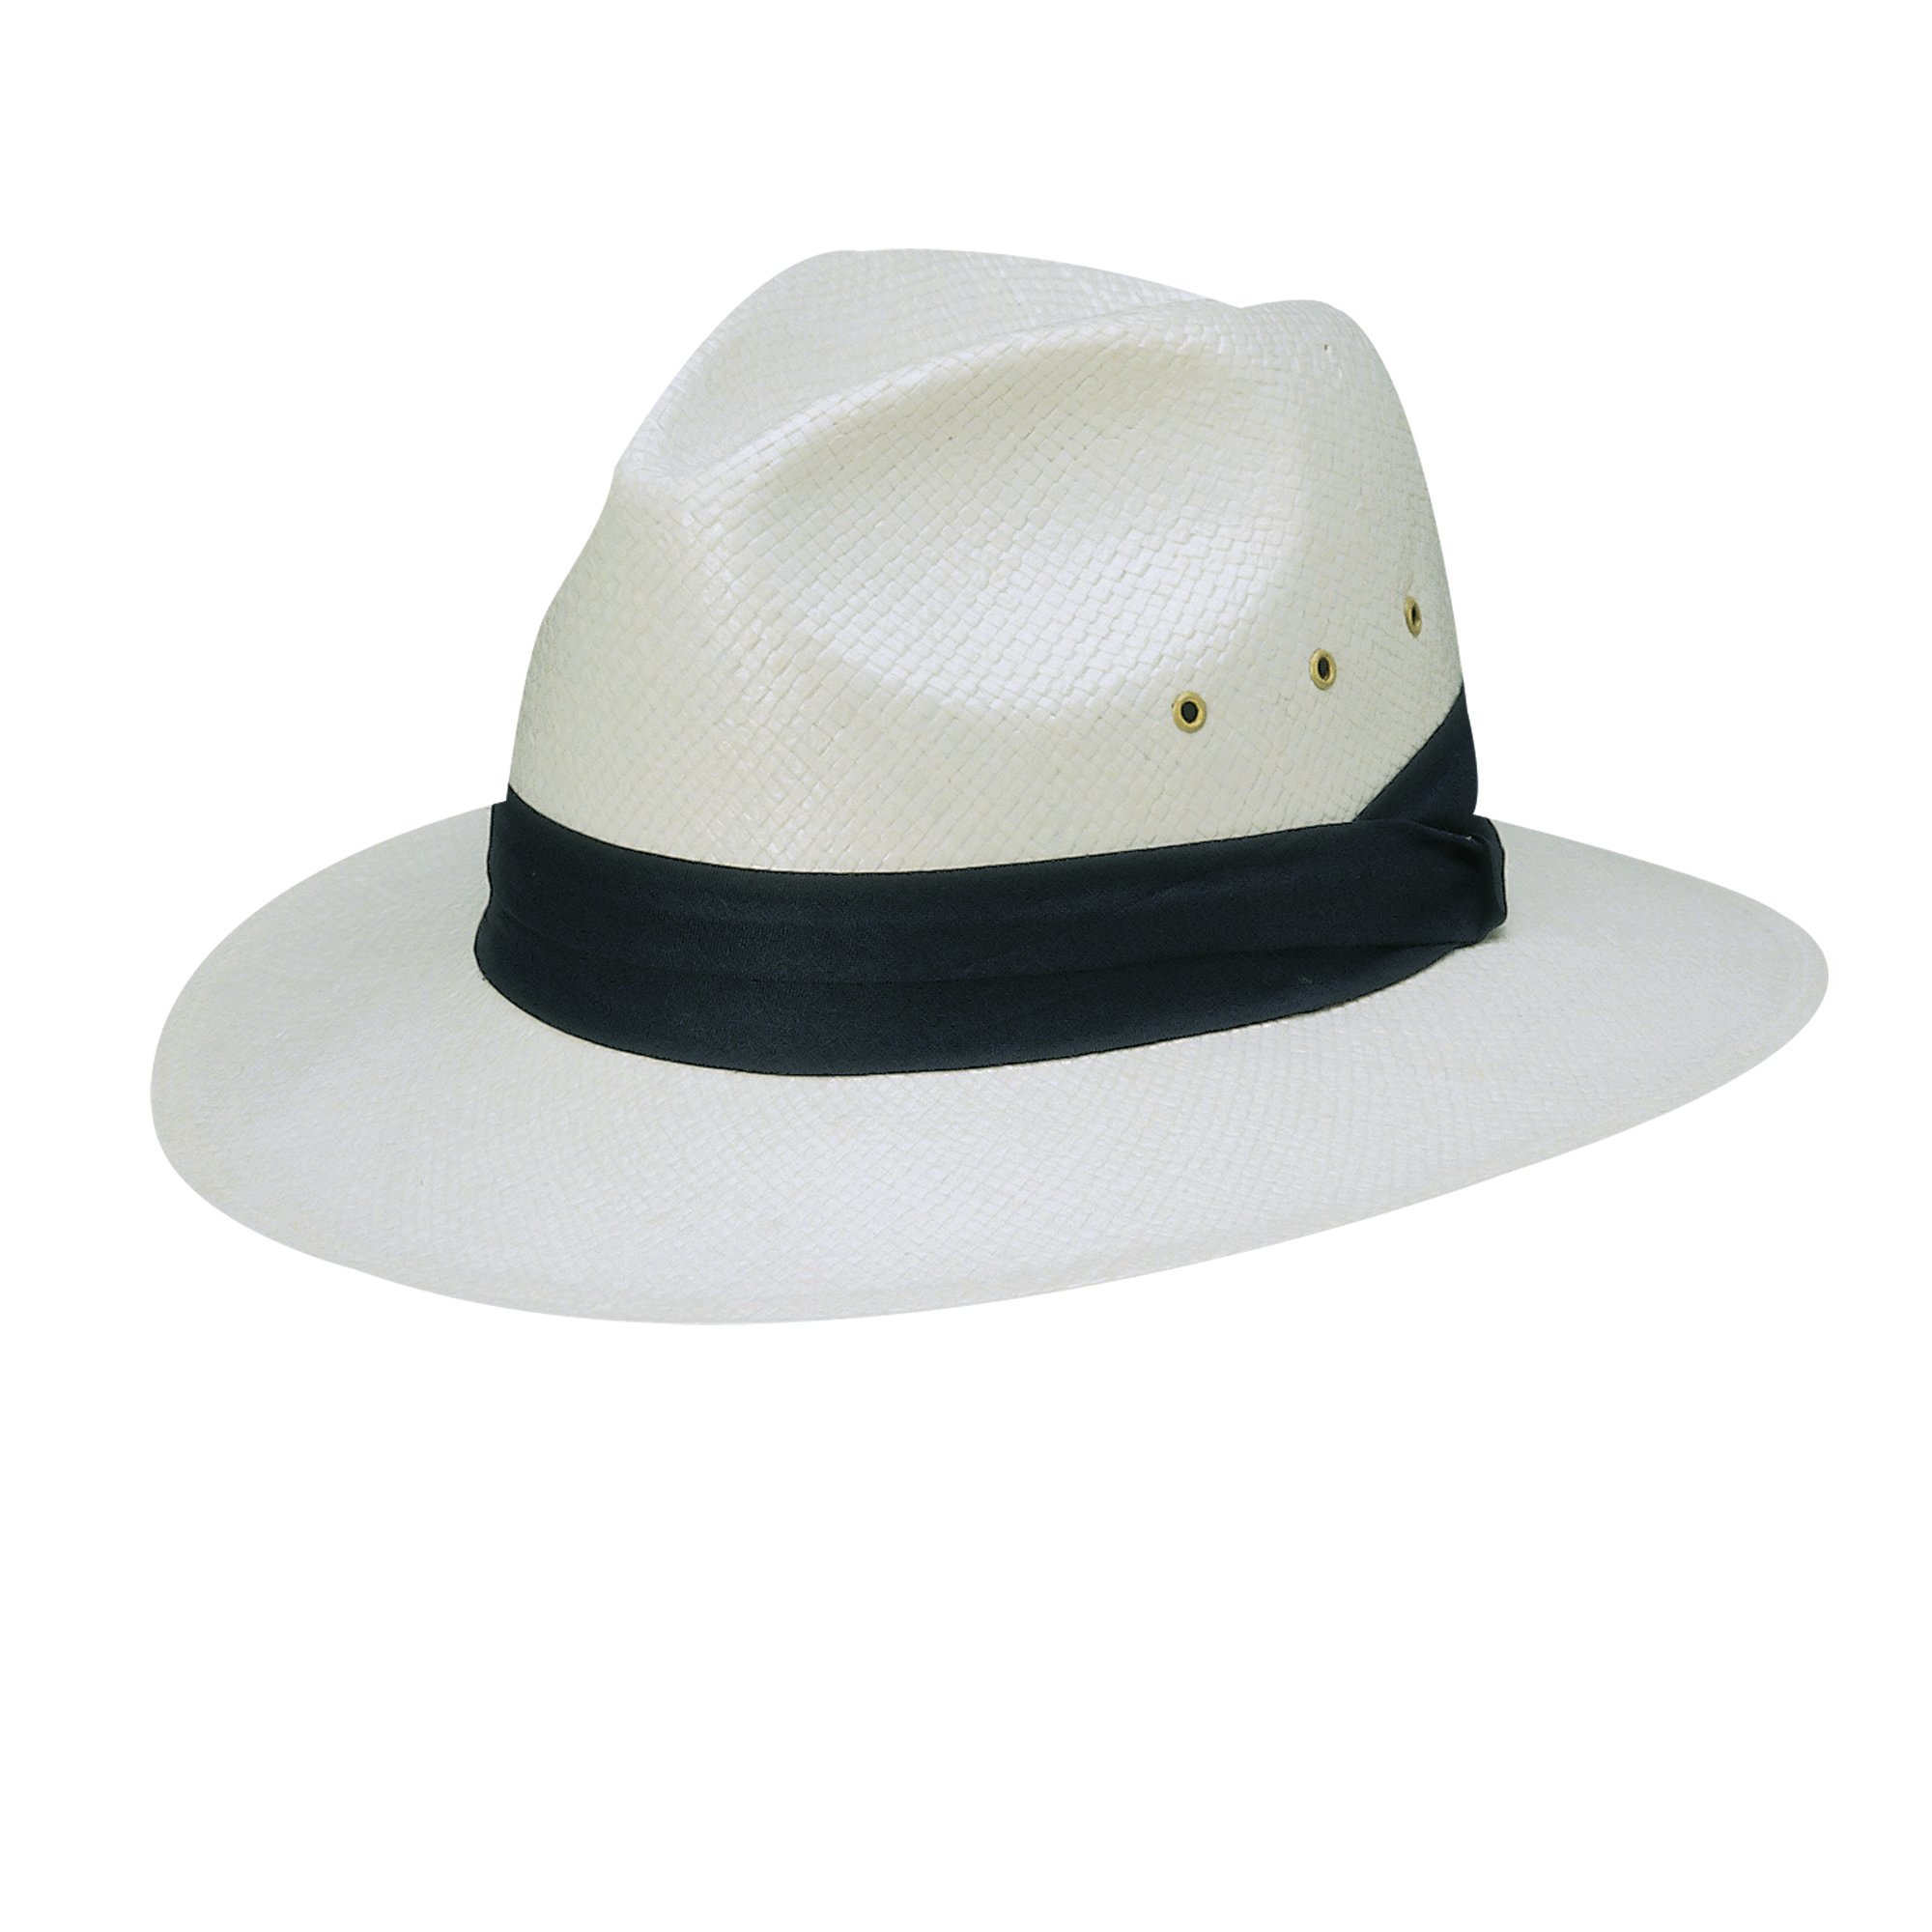 Dorfman Pacific - UV Safari hat toyo for men - Navy